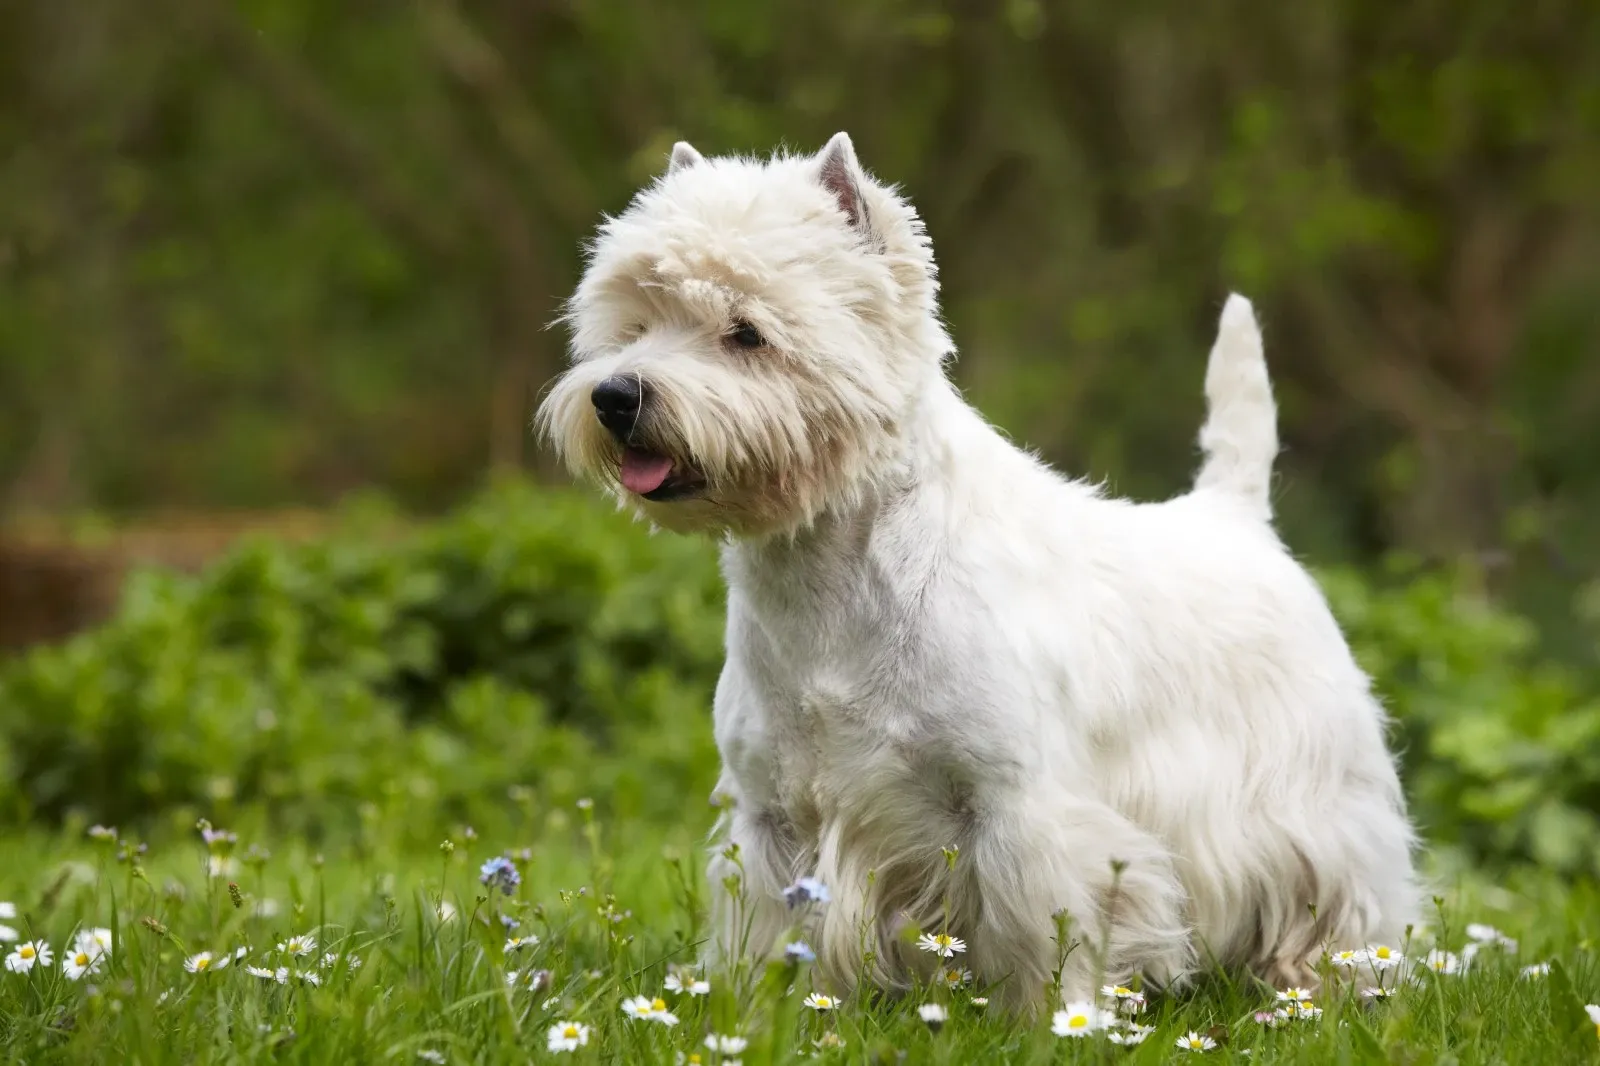 West highland terrier - En sjov finurlig familiehund